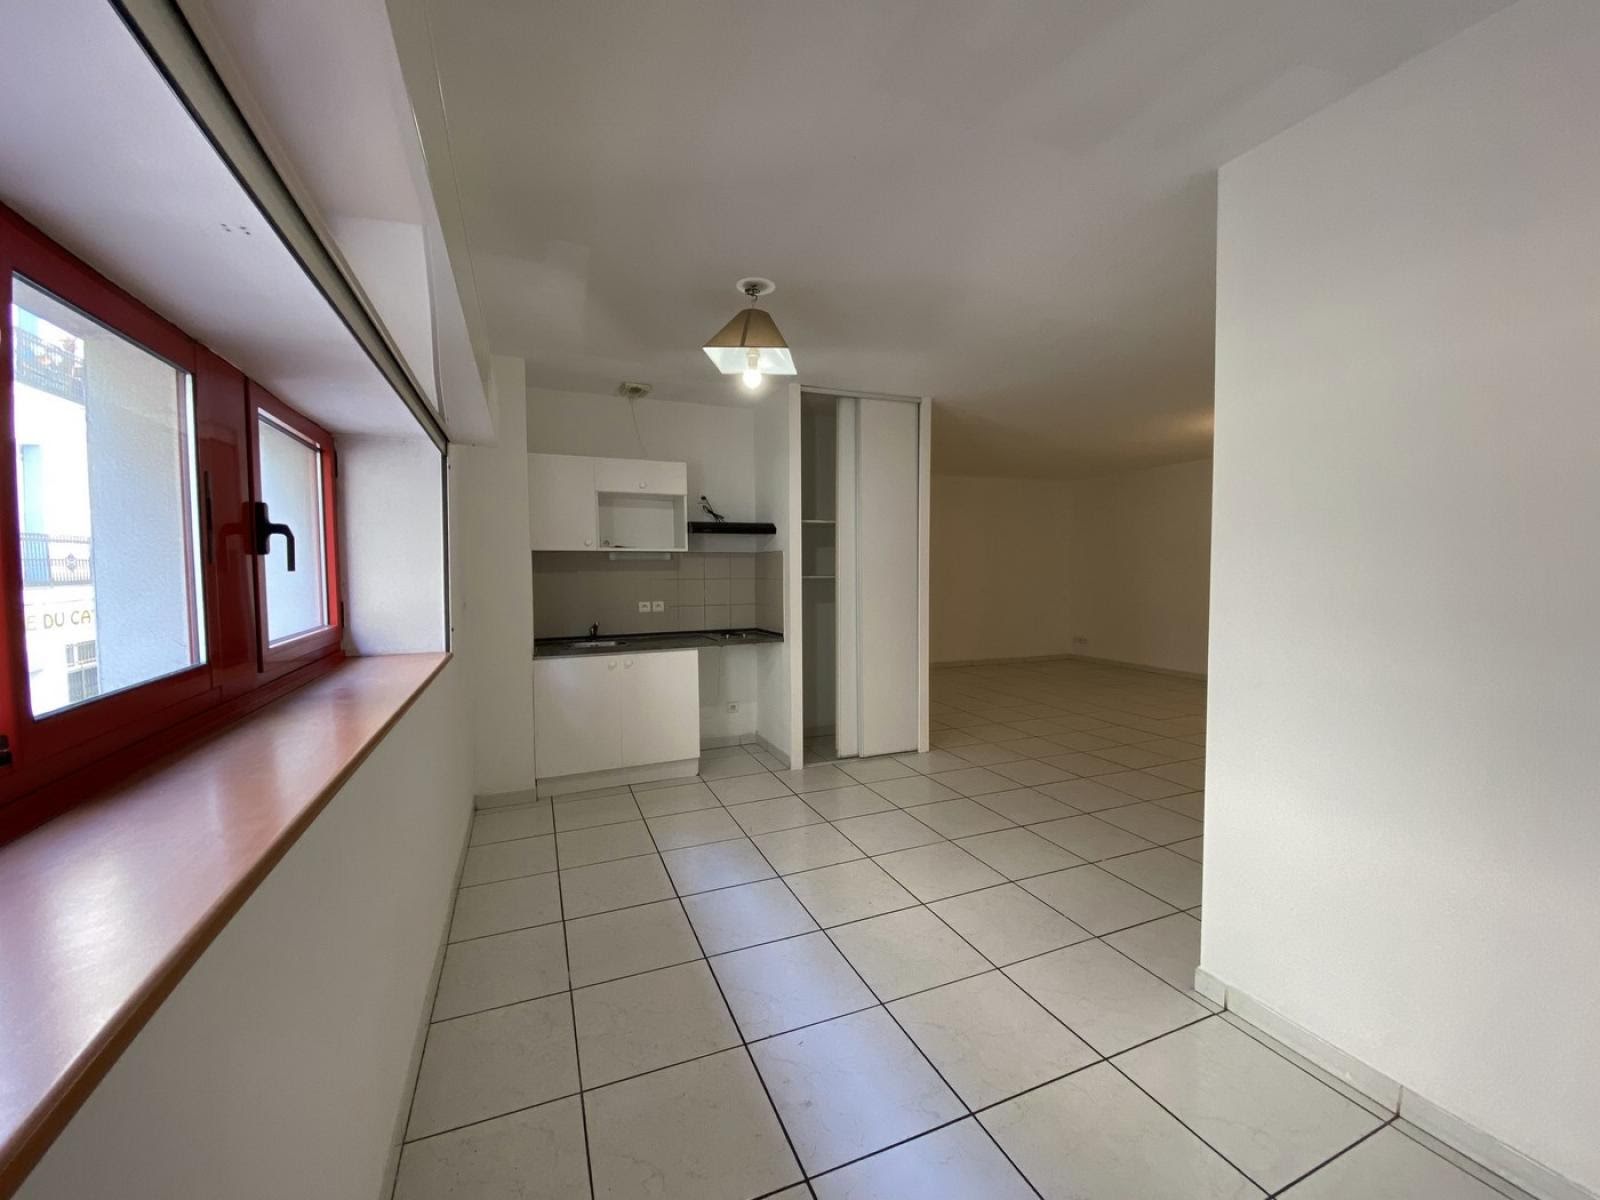 Vente appartement 2 pièces 75,46 m2